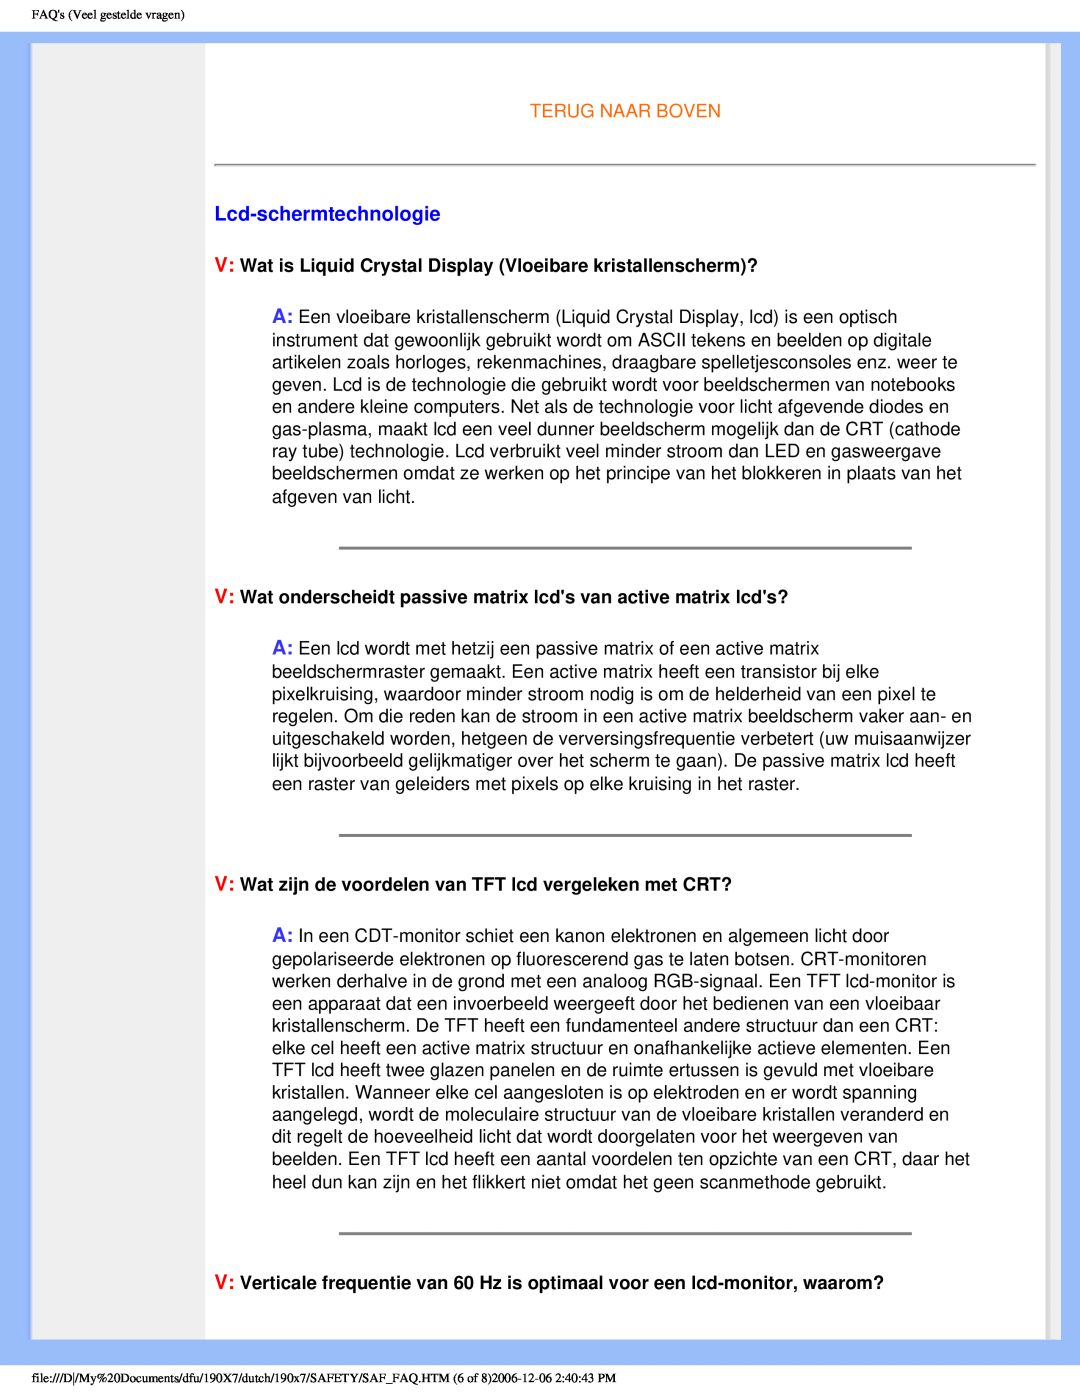 Philips 190X7 user manual Lcd-schermtechnologie, Terug Naar Boven, FAQs Veel gestelde vragen 